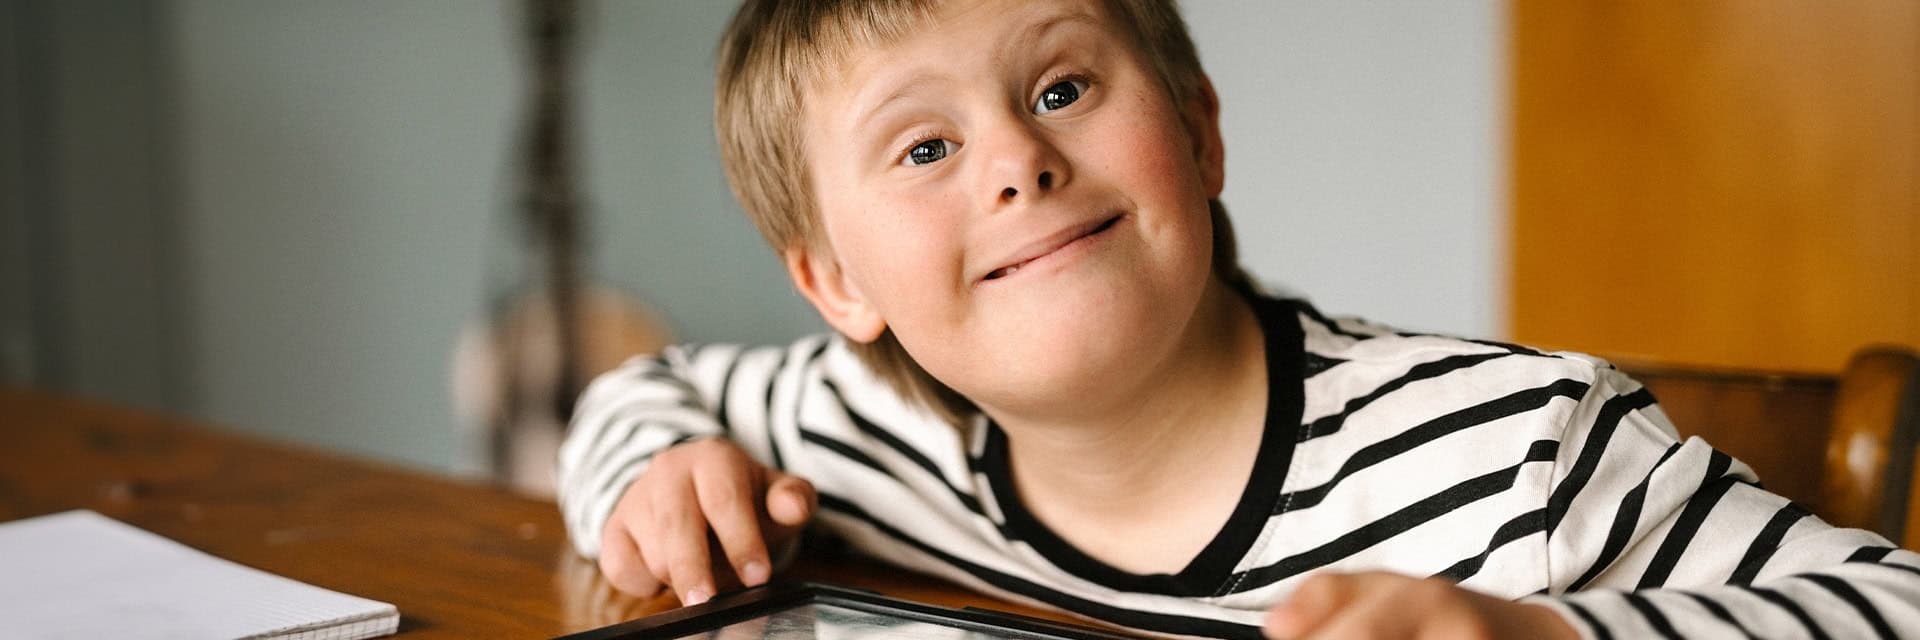 Ett bild på en pojke med Downs syndrome som sitter vid ett bord.